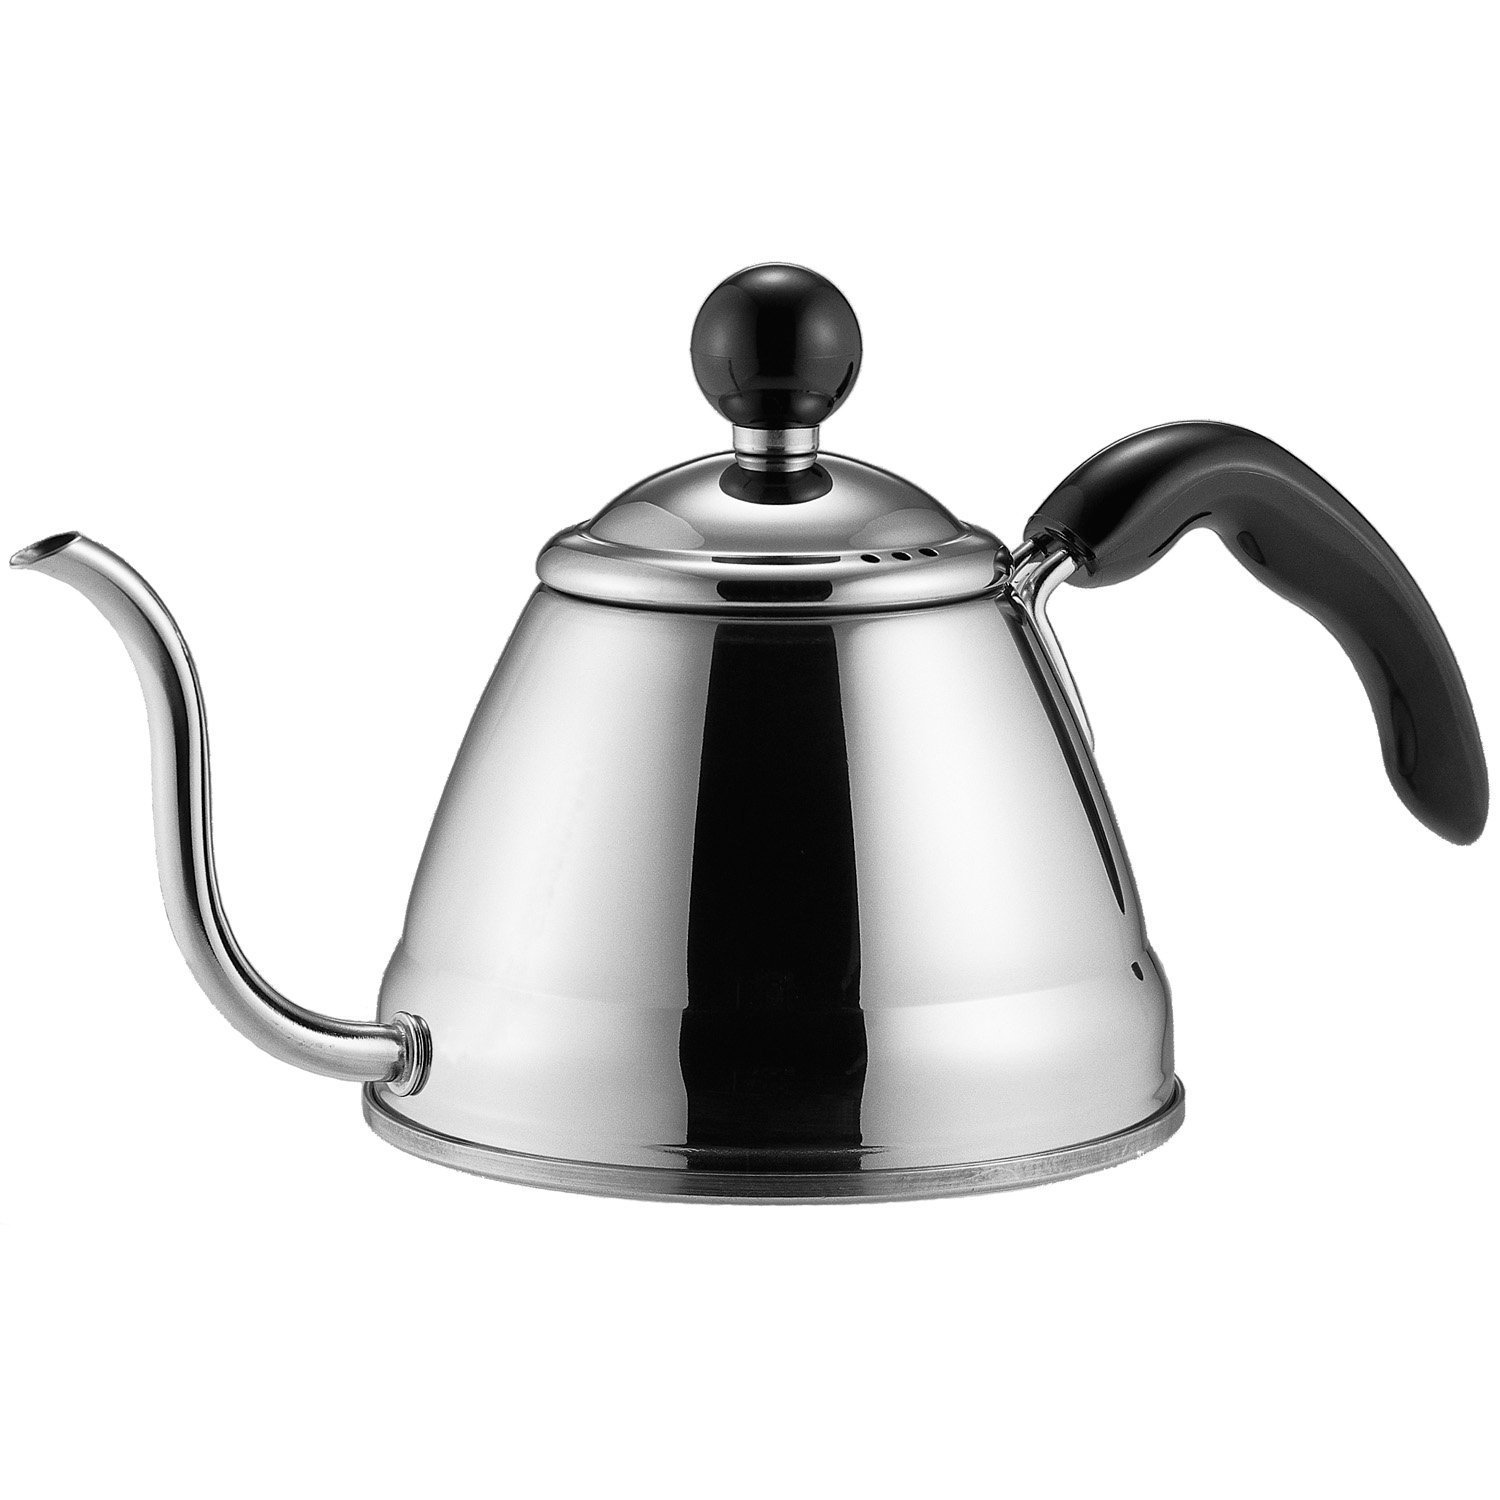 Canalón fino del cuello de cisne de la caldera del café del té del acero inoxidable de la calidad confiable para verter sobre el café